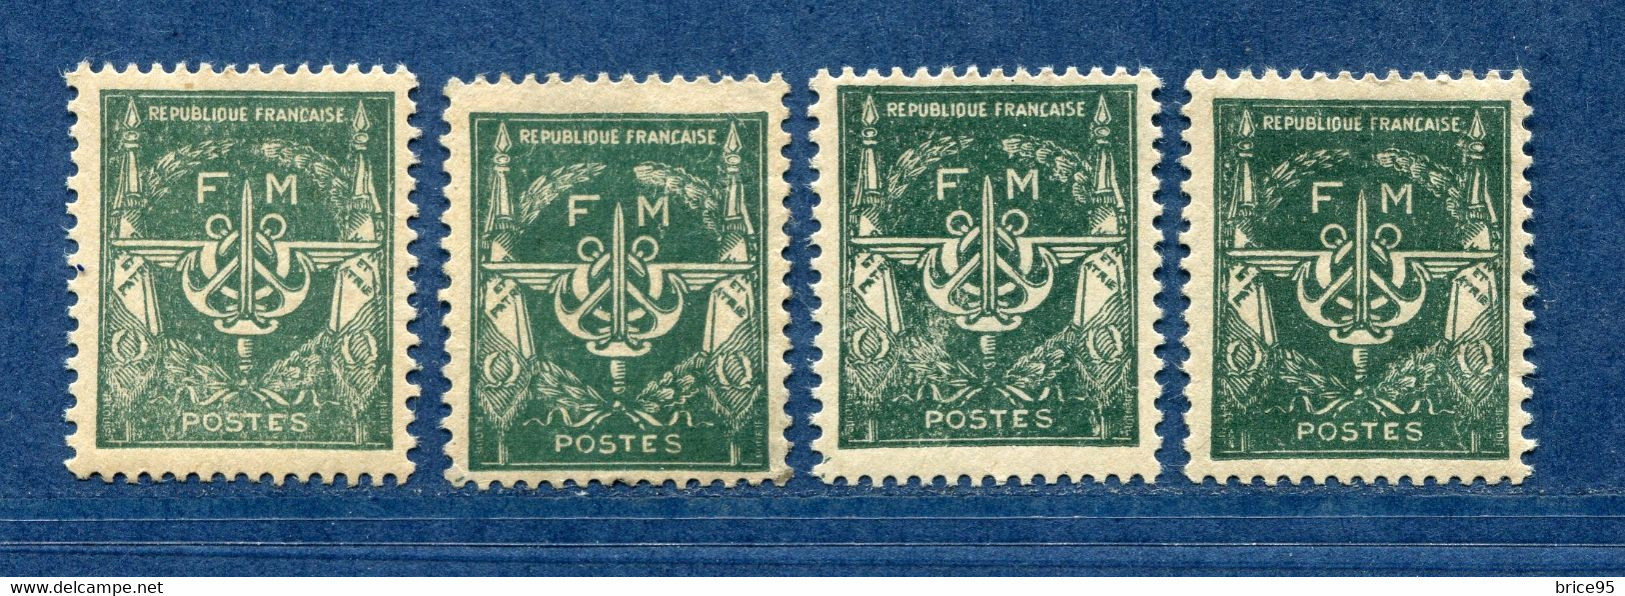 ⭐ France - Variété - YT FM N° 11 - Franchise Militaire - Couleurs - Pétouilles - Neuf Avec Charnière - 1946 ⭐ - Nuevos